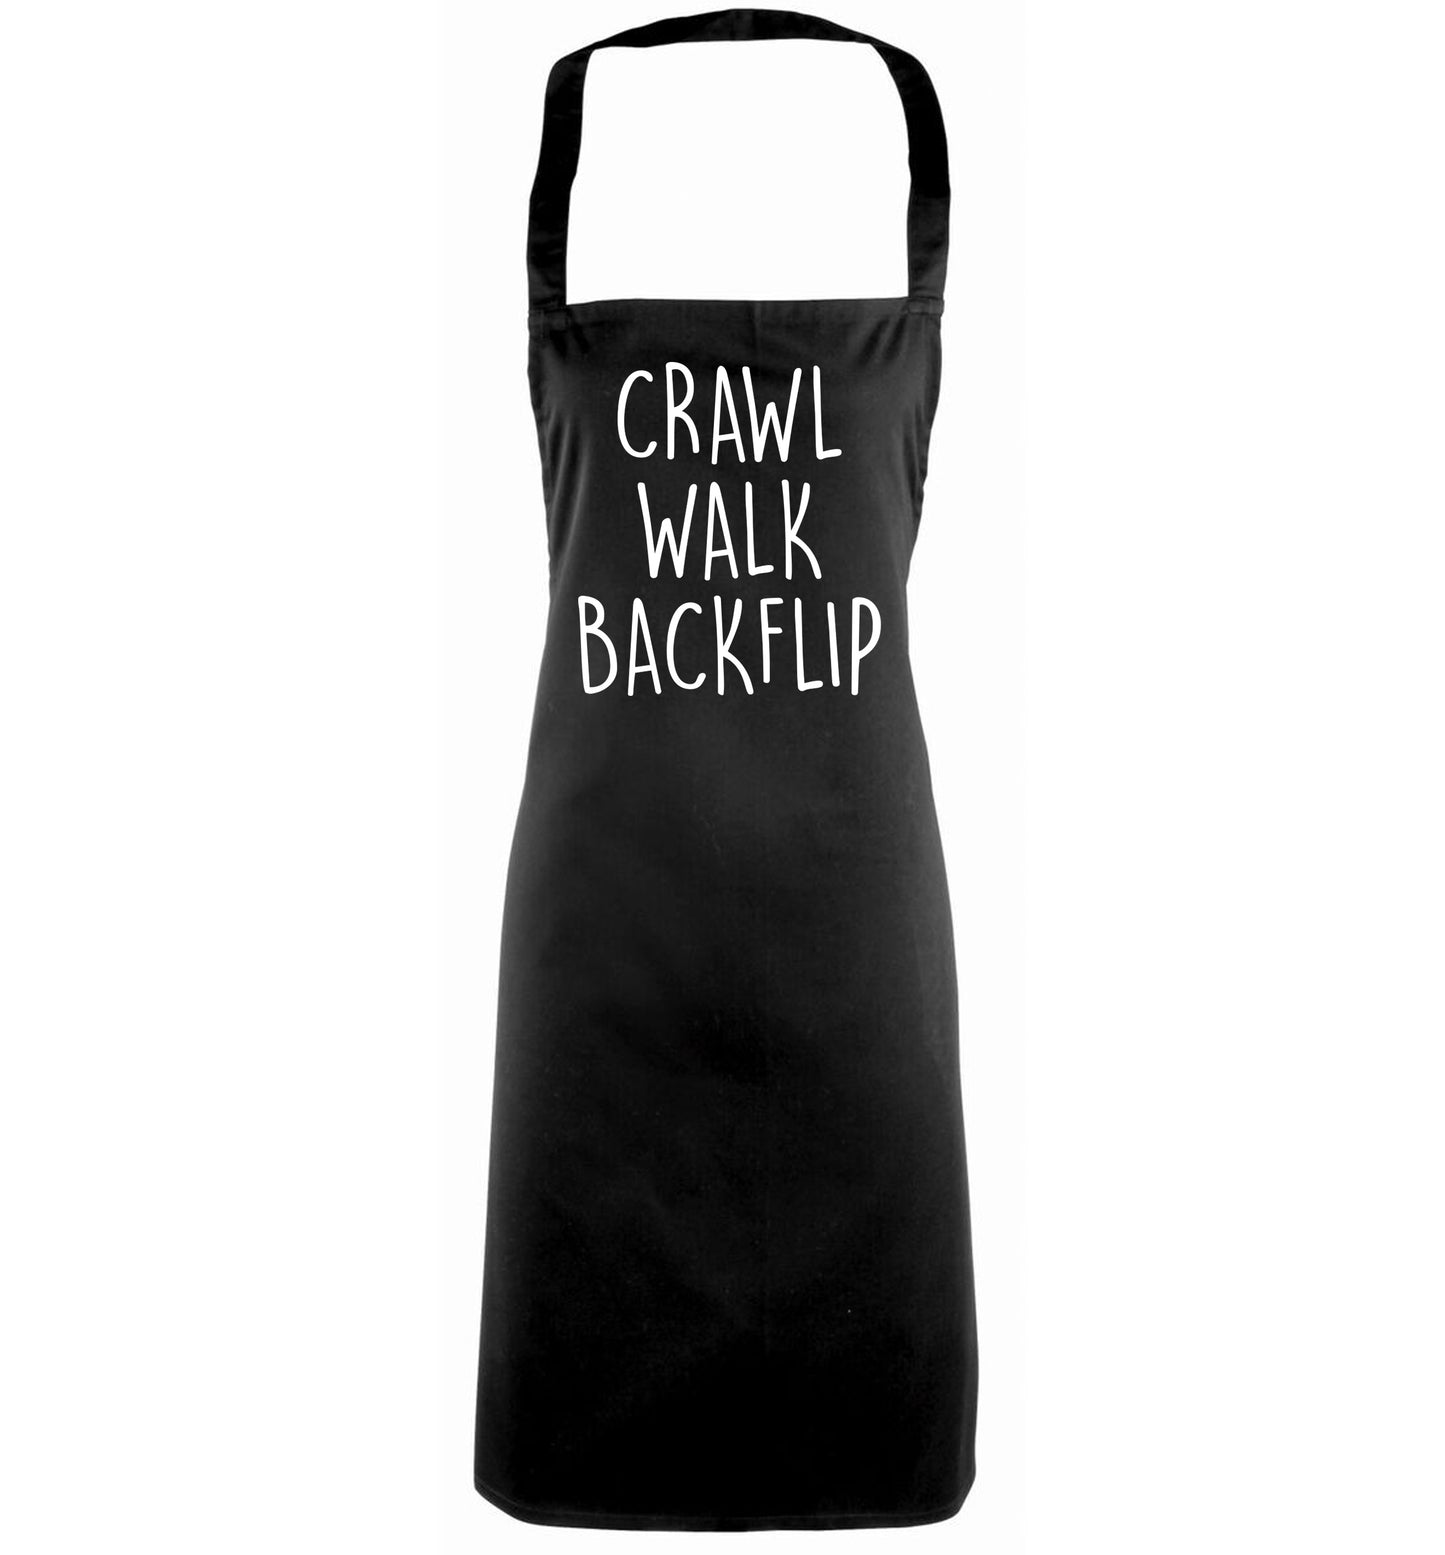 Crawl Walk Backflip black apron